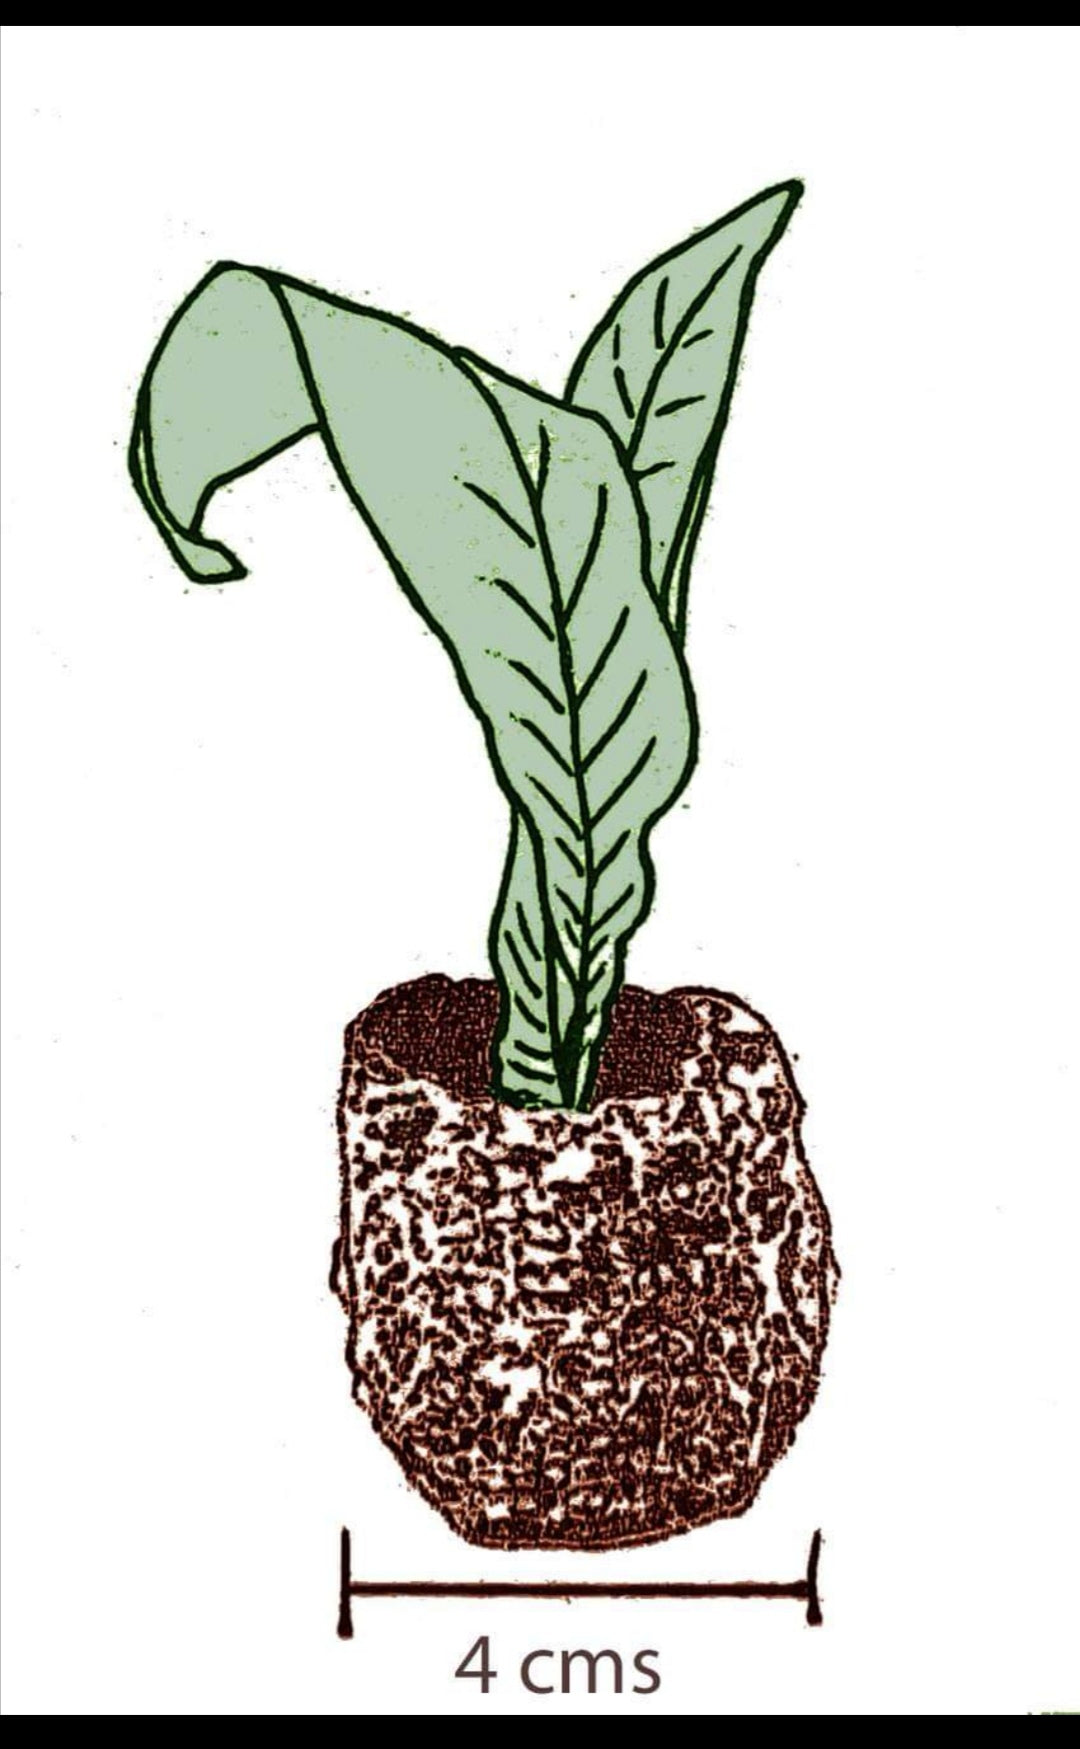 Streptocarpus Alana